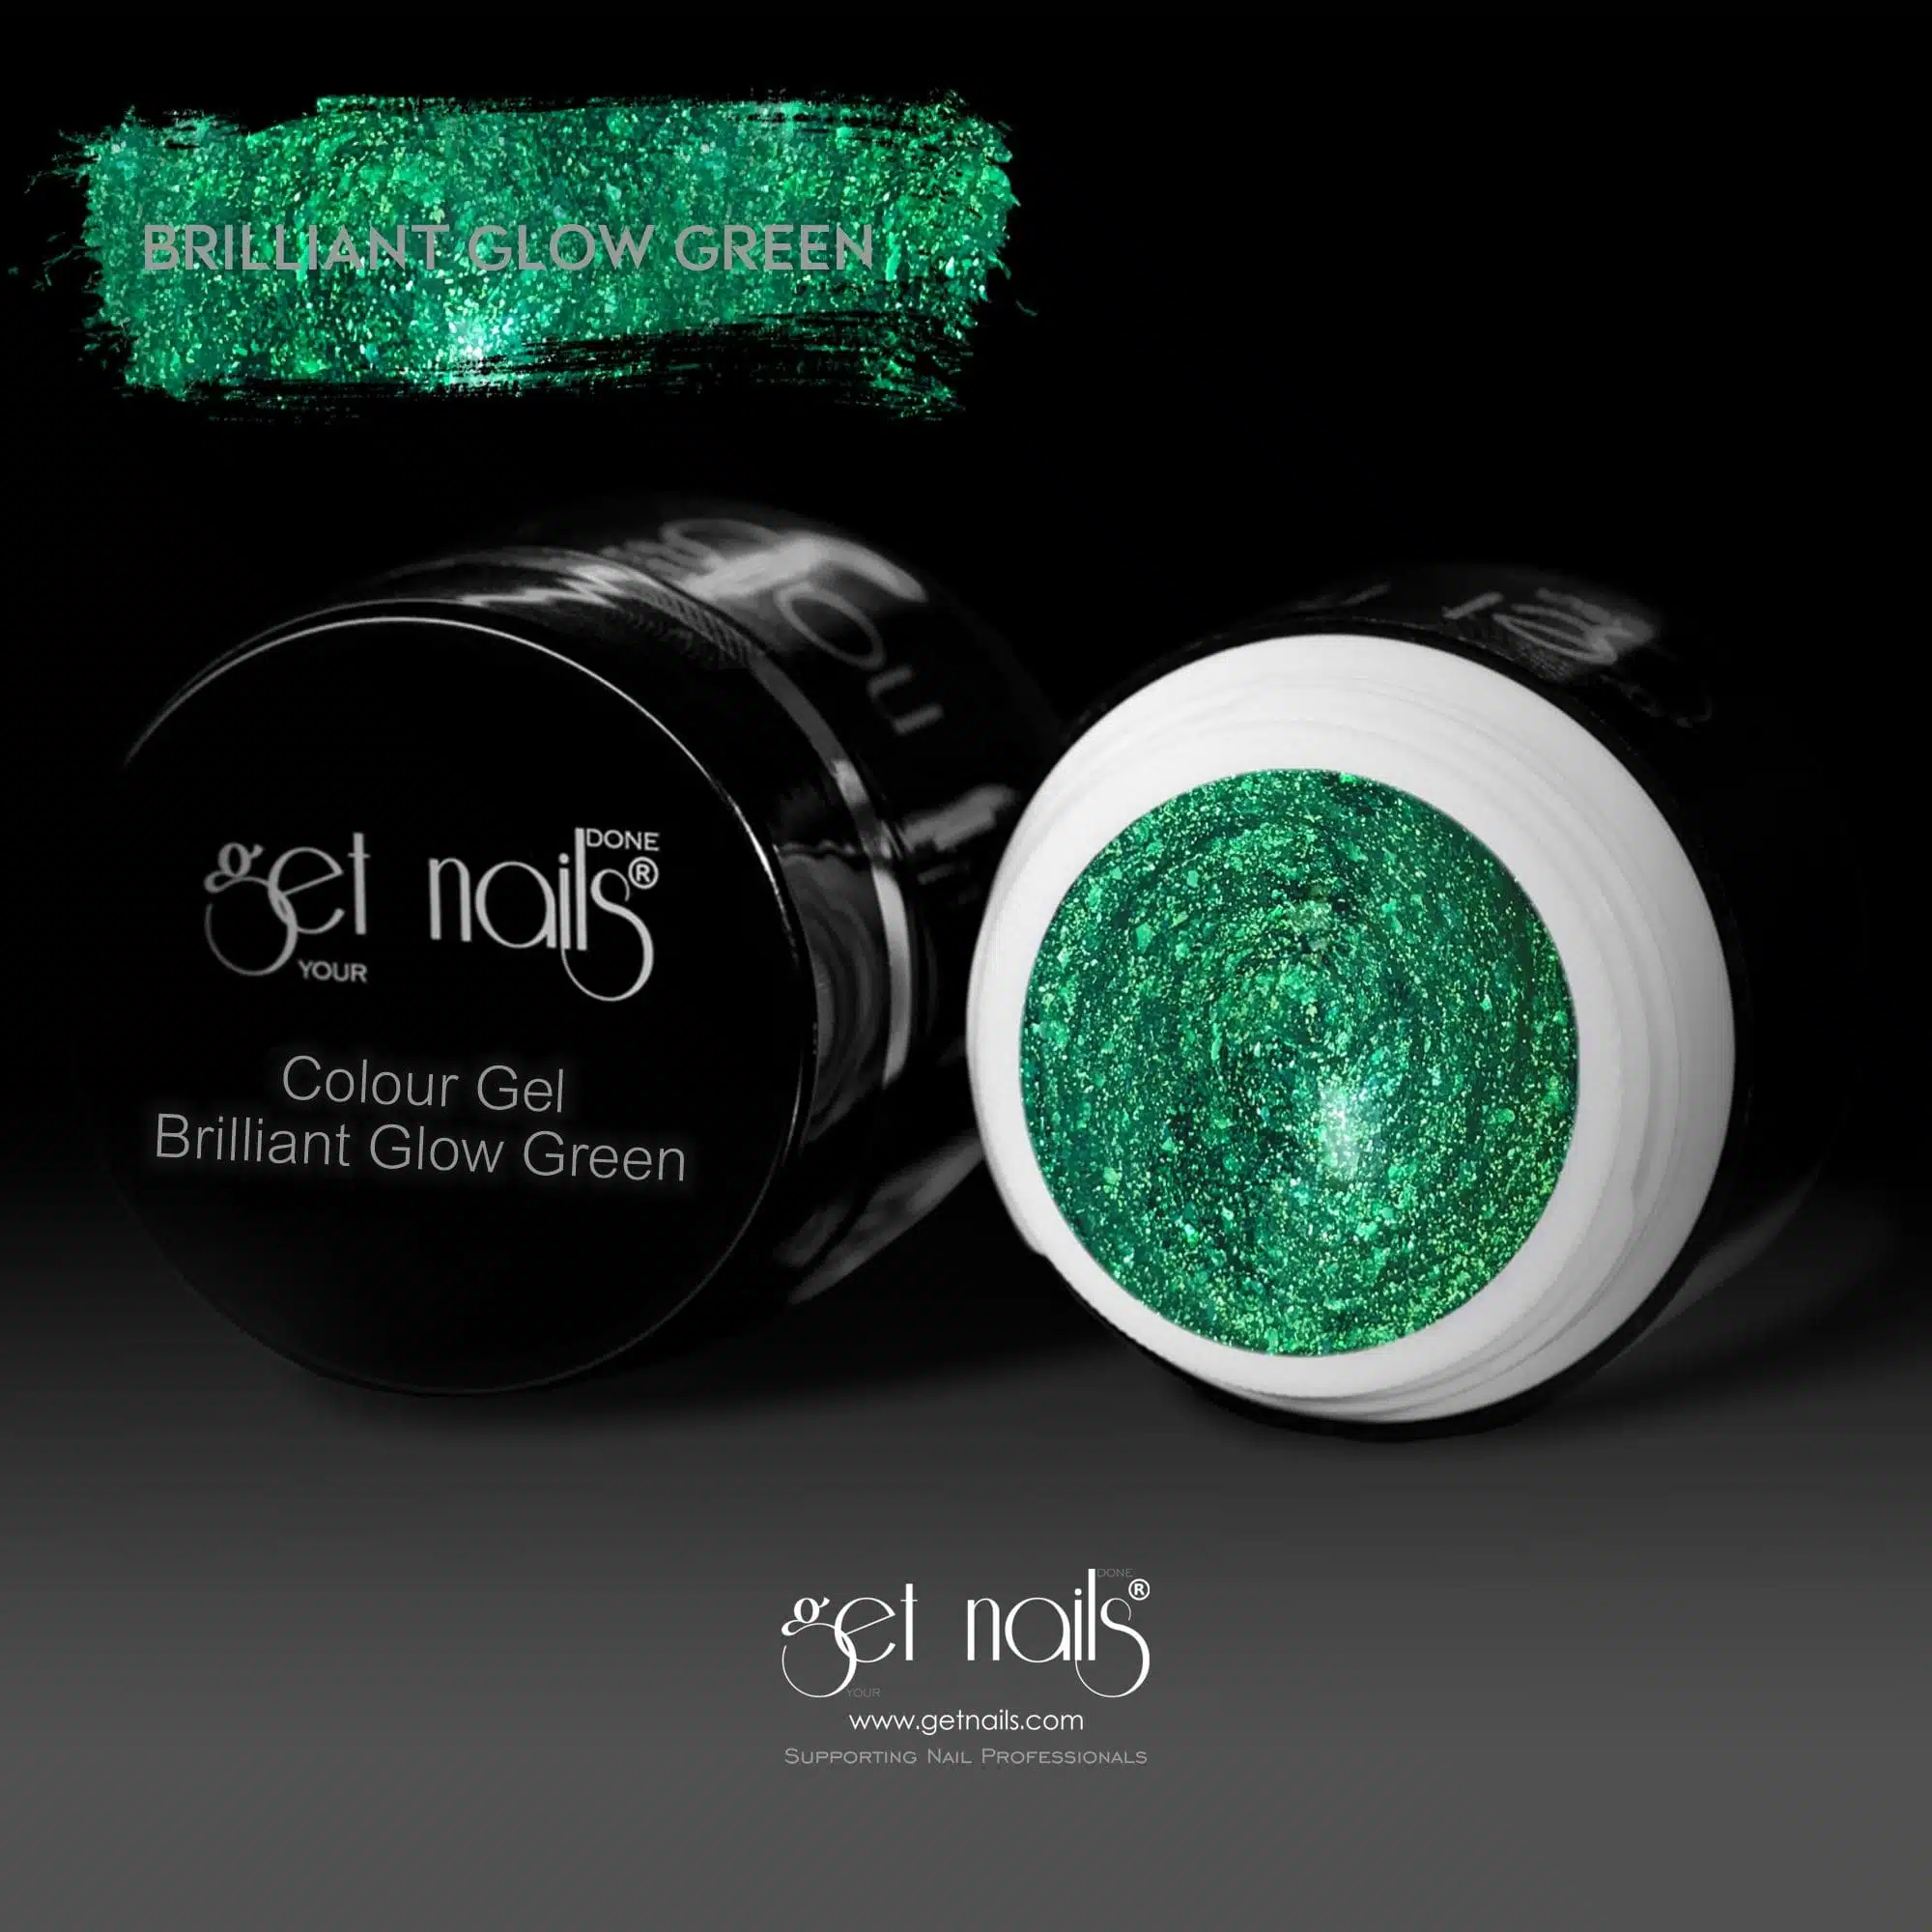 Get Nails Austria - Цветной гель Brilliant Glow Green 5g-min